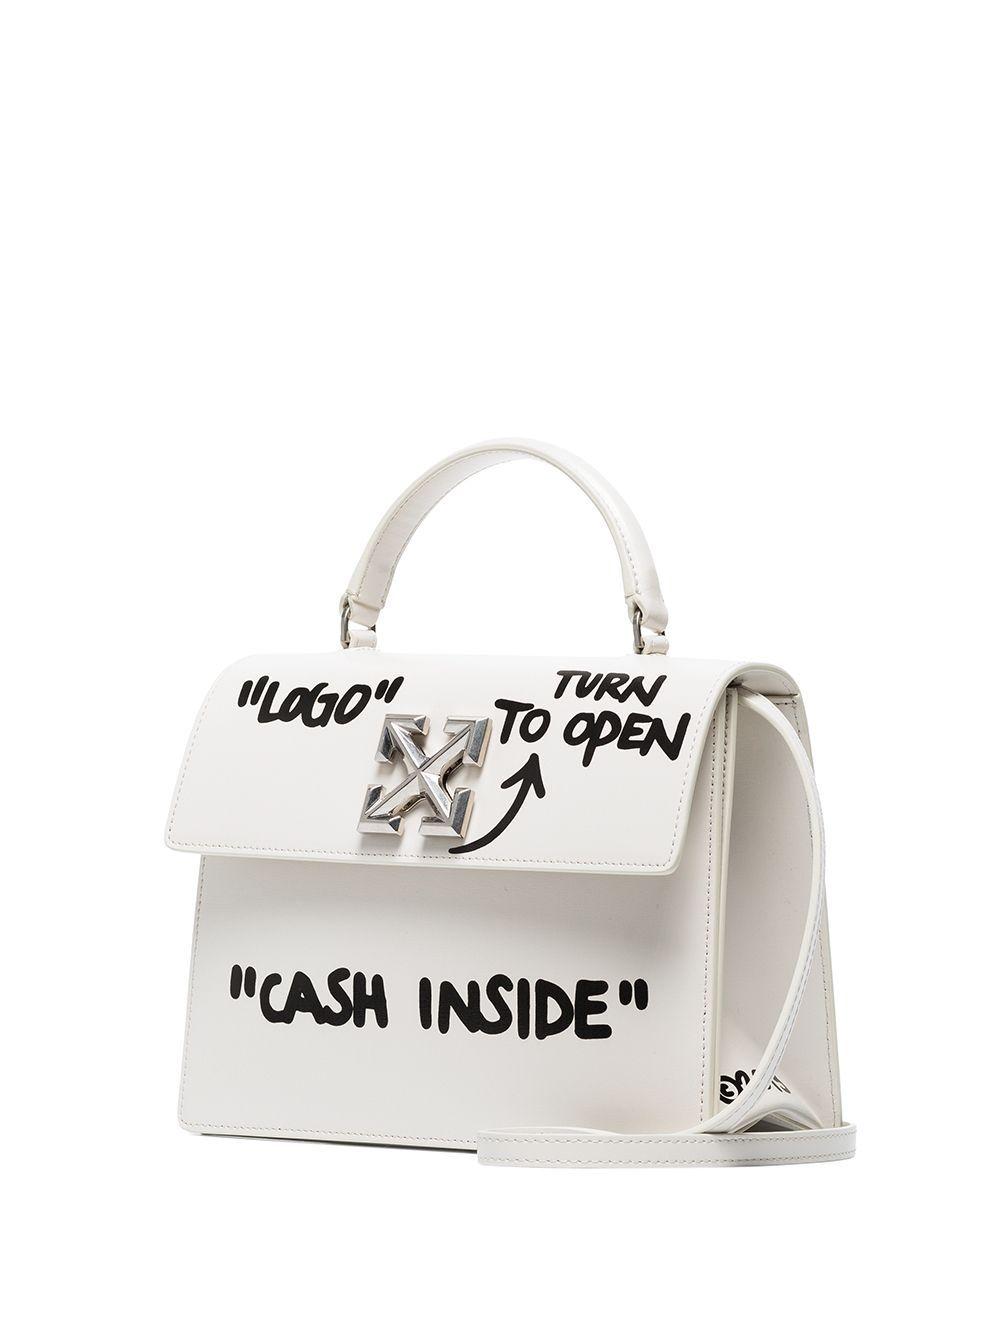 Off-White c/o Virgil Abloh Jitney 2.8 Cash Inside Bag in White | Lyst